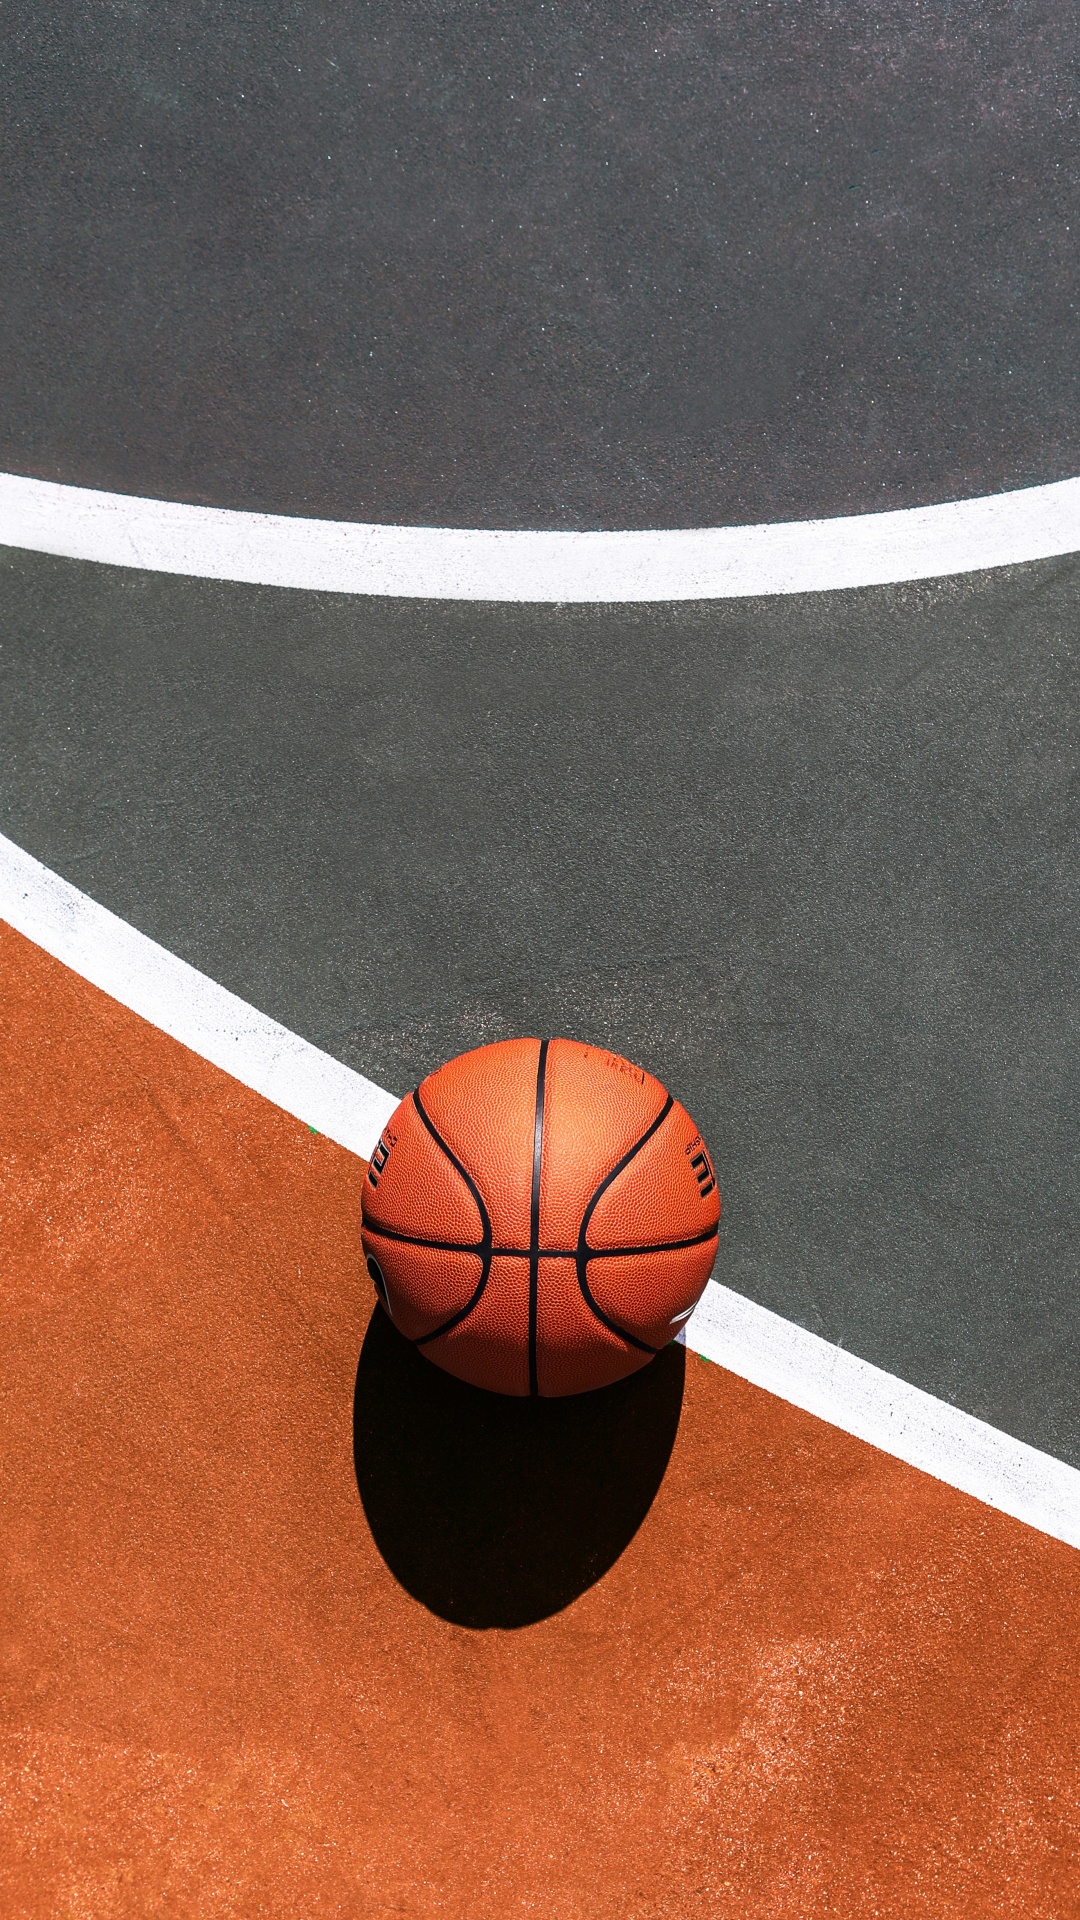 Basketball Auf Blau-weißem Basketballplatz. Wallpaper in 1080x1920 Resolution